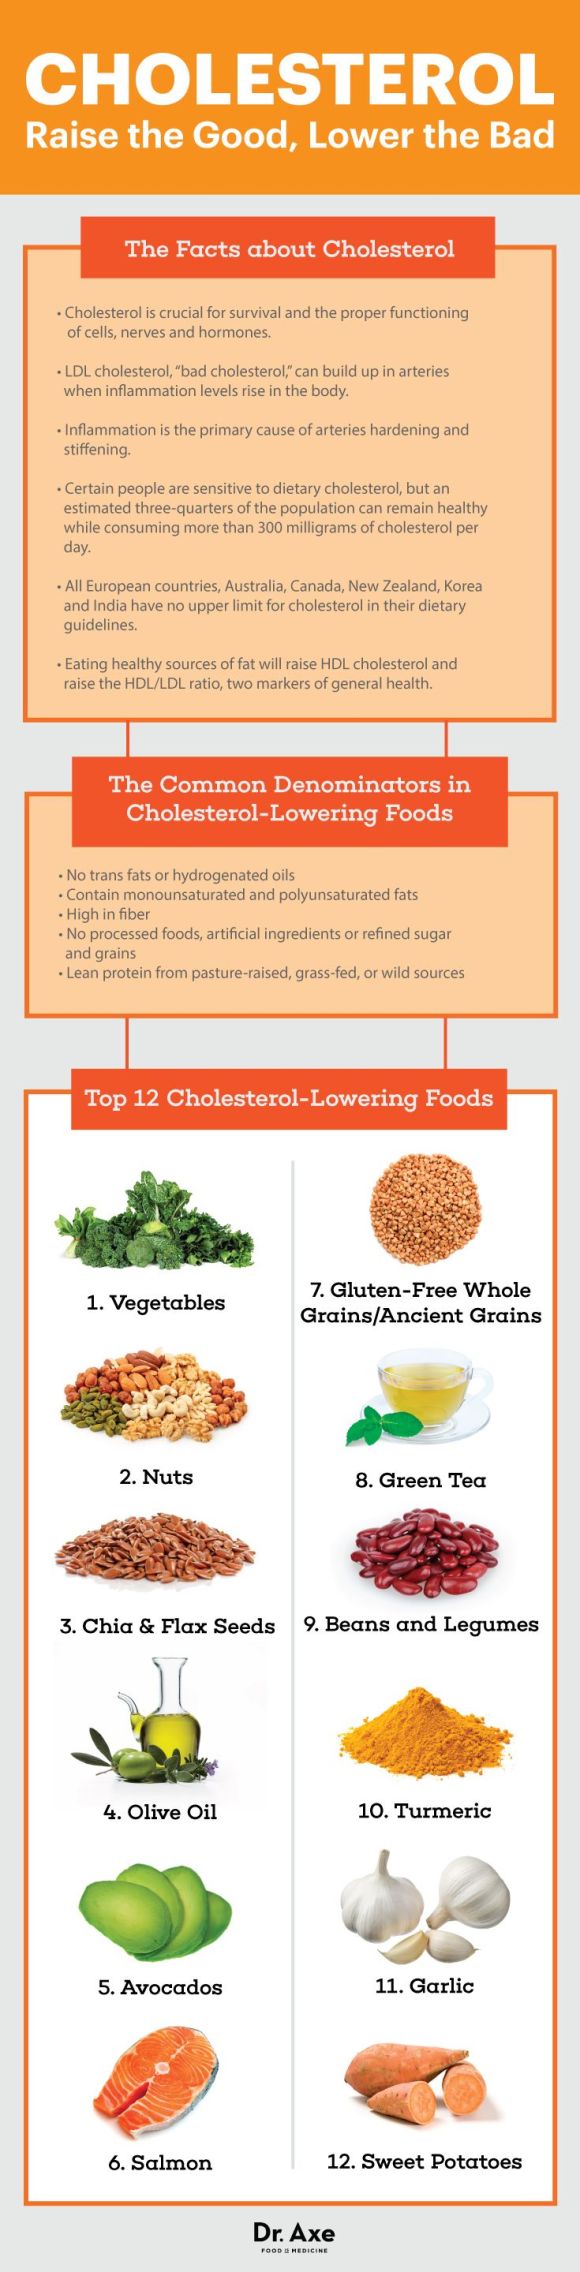 Top 12 Cholesterol-Lowering Foods